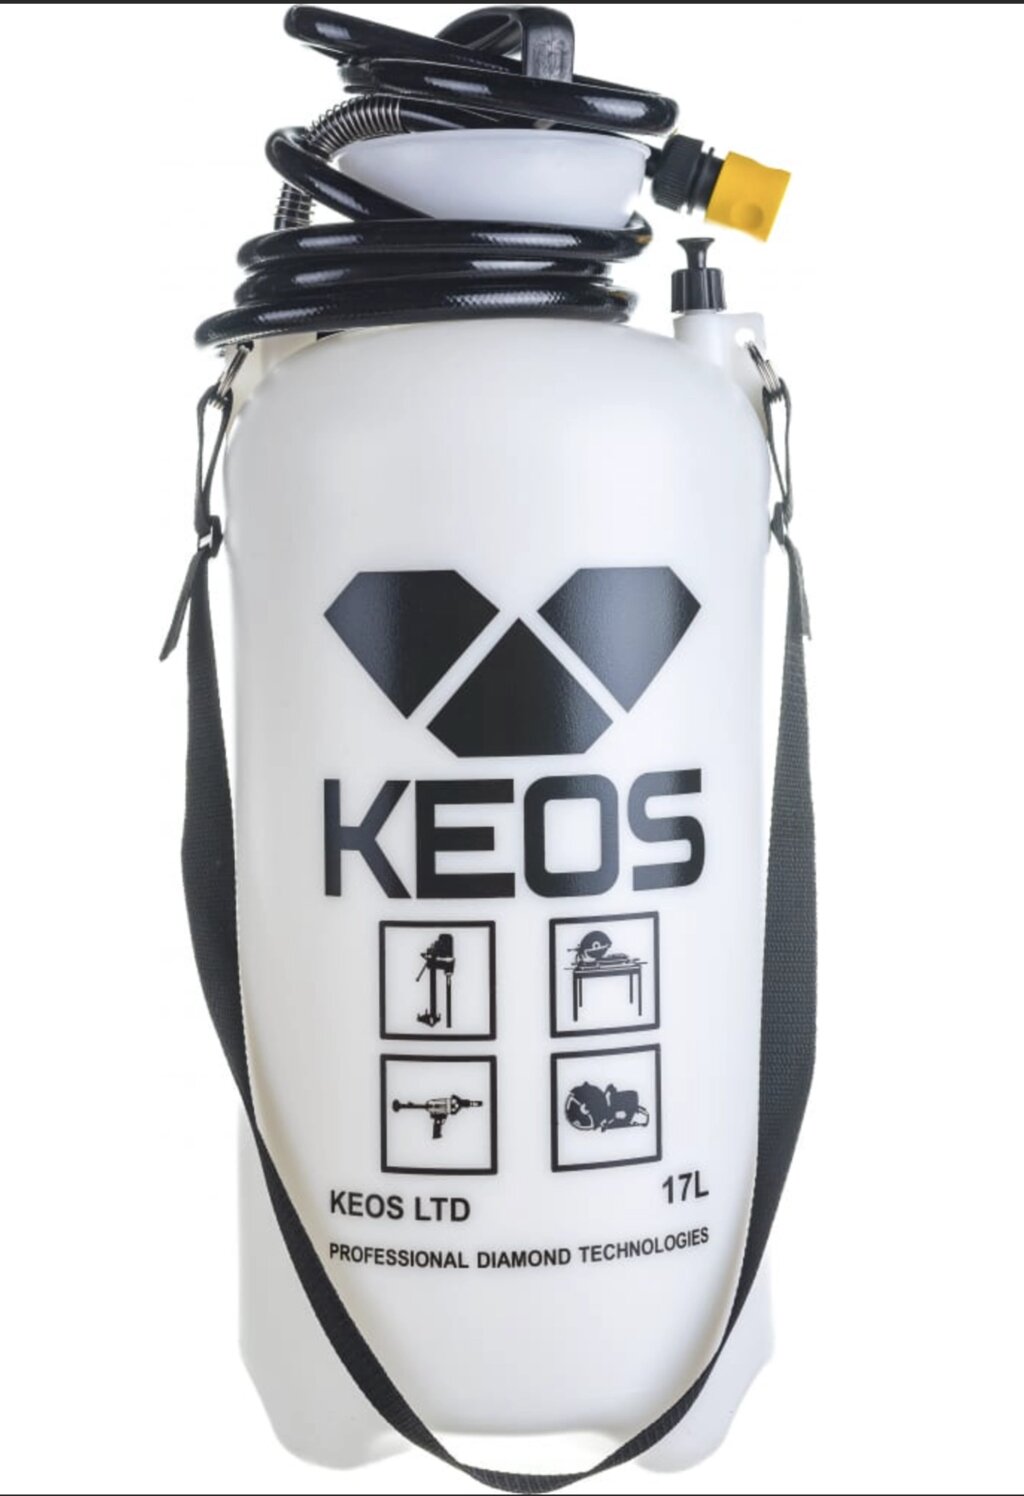 Бак для подачи воды (водяной насос) установки алмазного бурения KEOS 17 литров - особенности